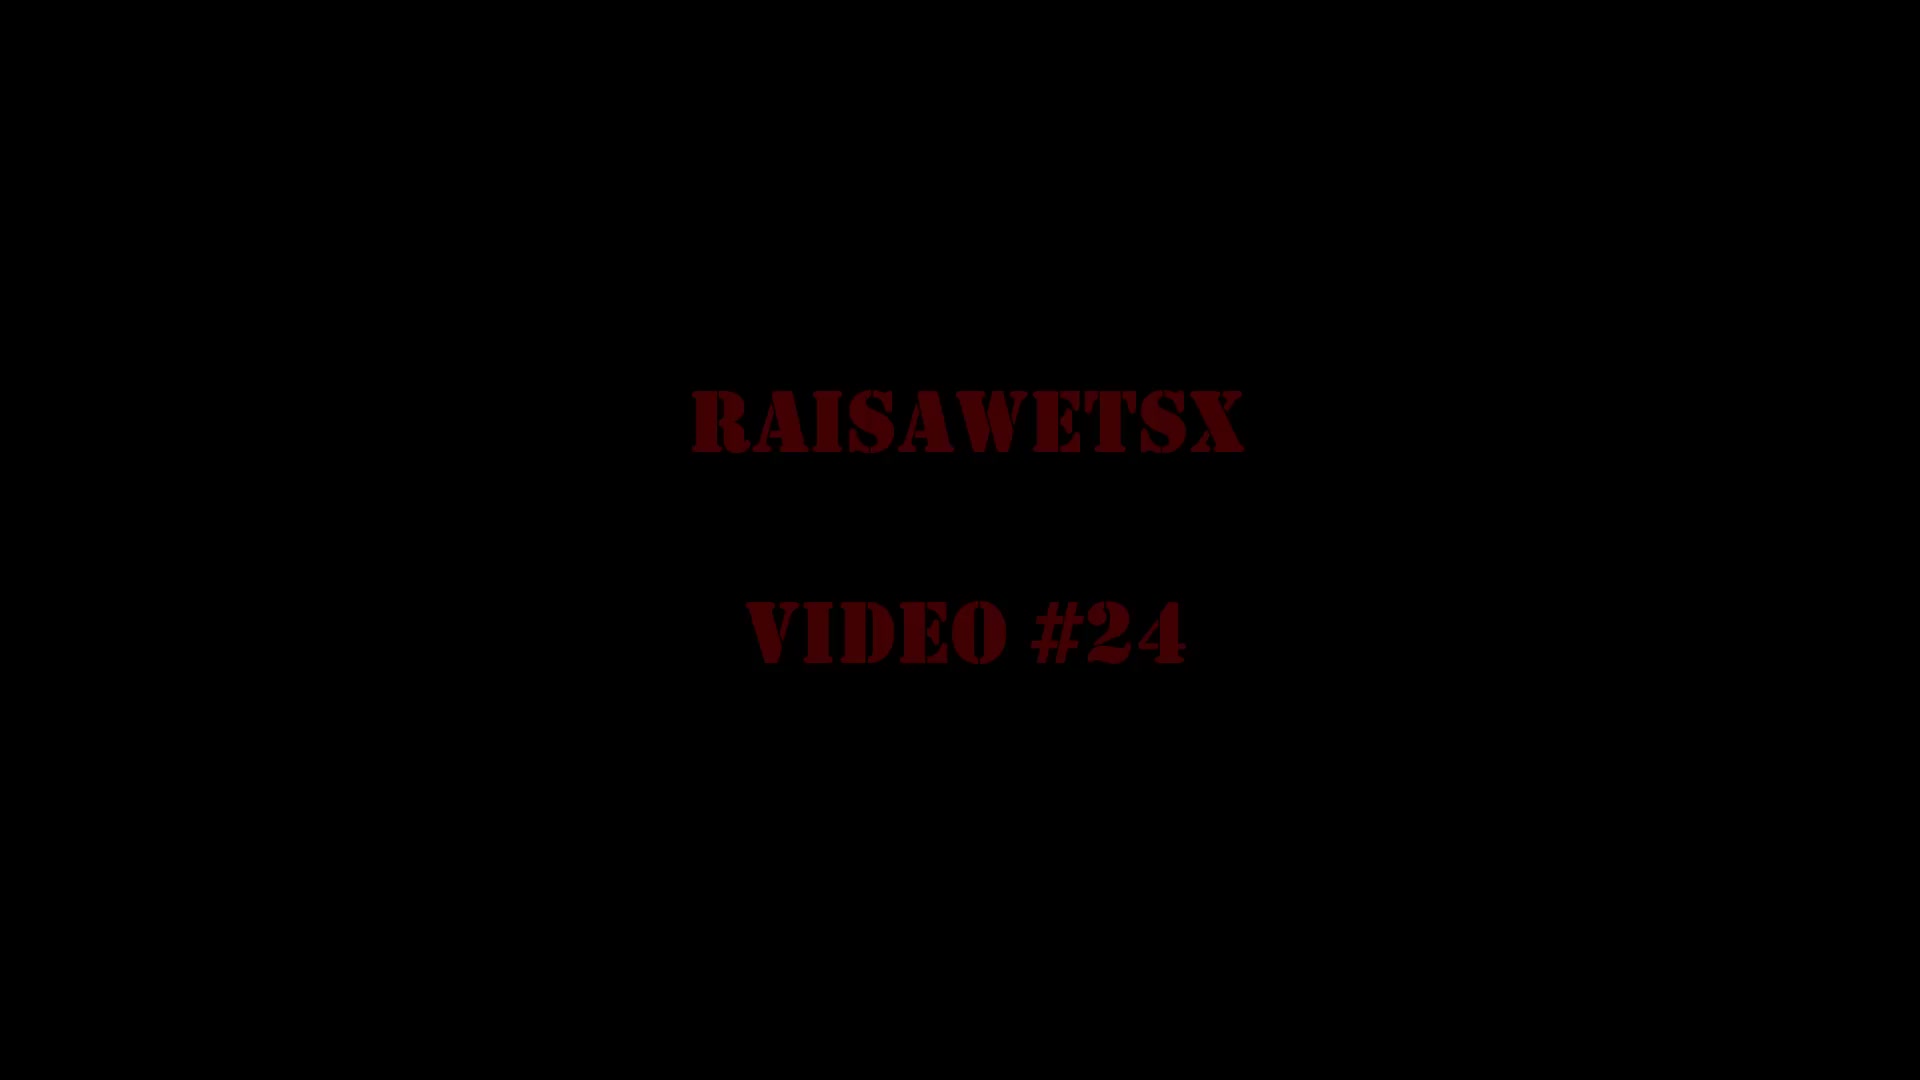 Raisawetxs